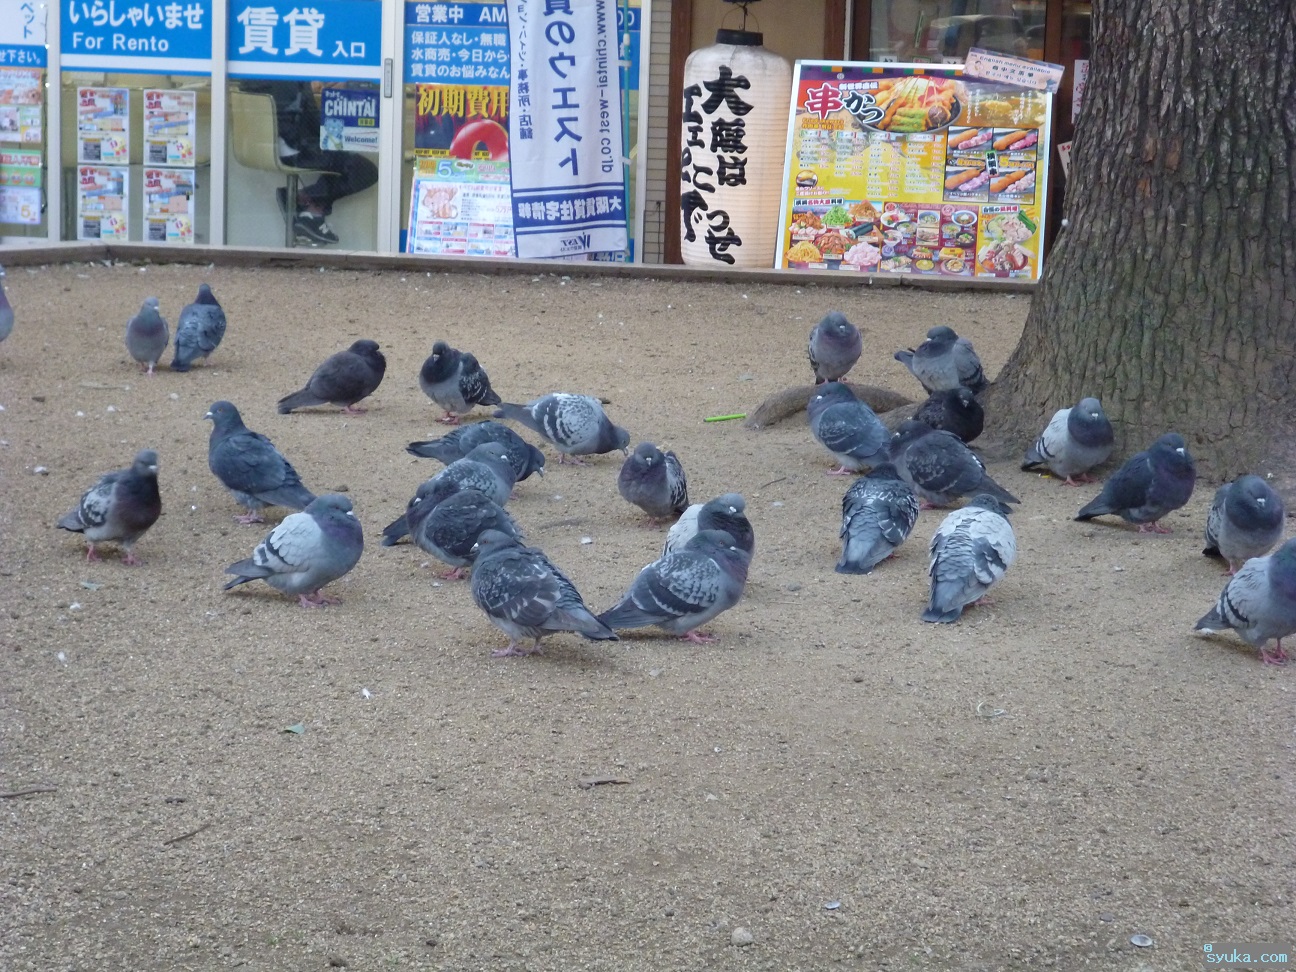 鳥の名前 都会に生息する鳥プチ図鑑 大阪の街中や河川敷で見られる鳥たち 情報秘密基地